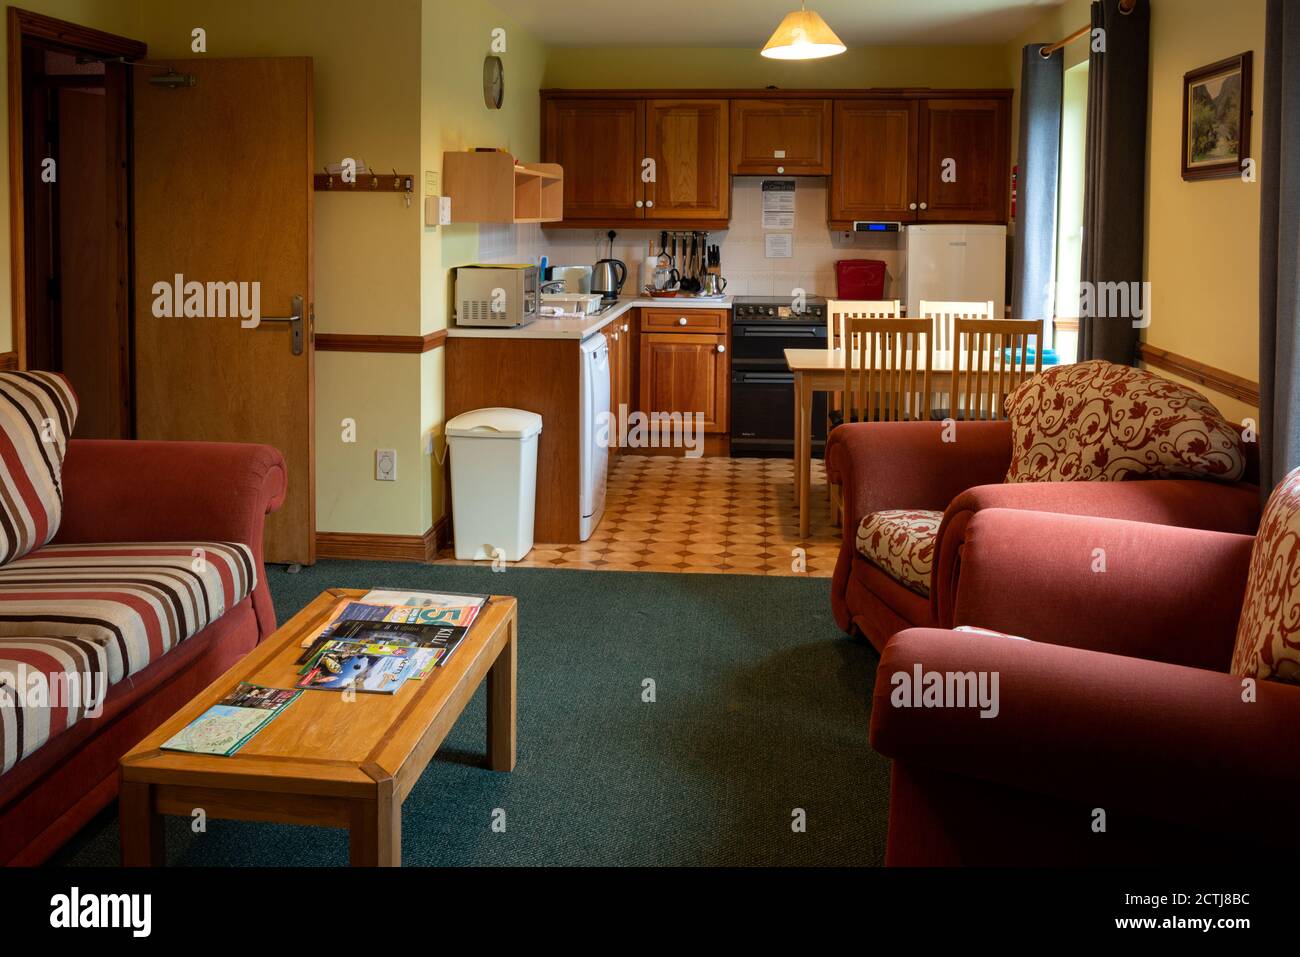 Typische altmodische farbenfrohe Wohnzimmereinrichtung mit Selbstverpflegung Gästehaus und Bed and Breakfast-Wohnung Stockfoto